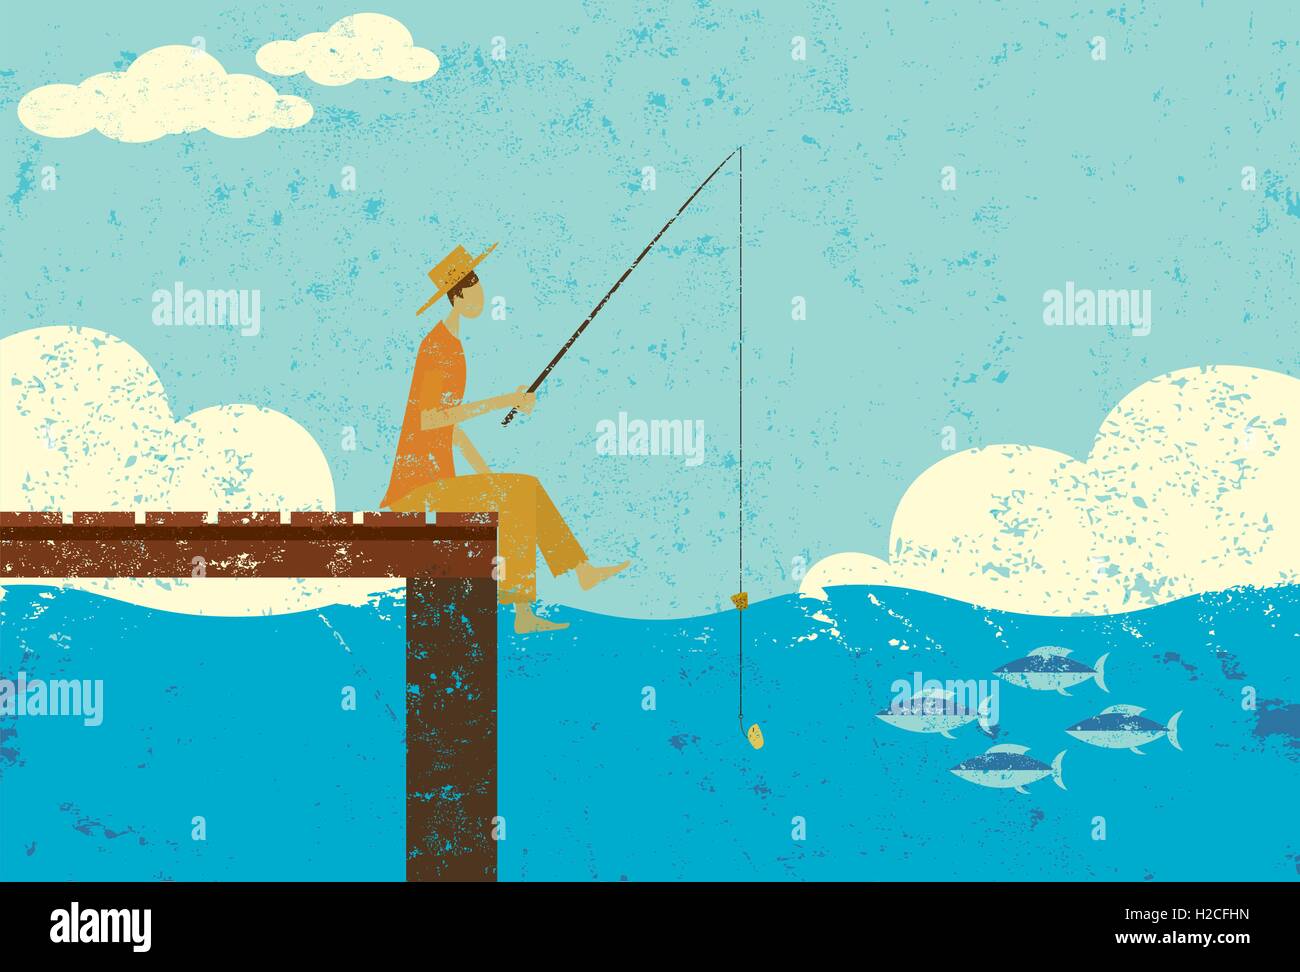 La pesca su una dock un uomo in abiti strappati la pesca sulla estremità di un dock. Illustrazione Vettoriale